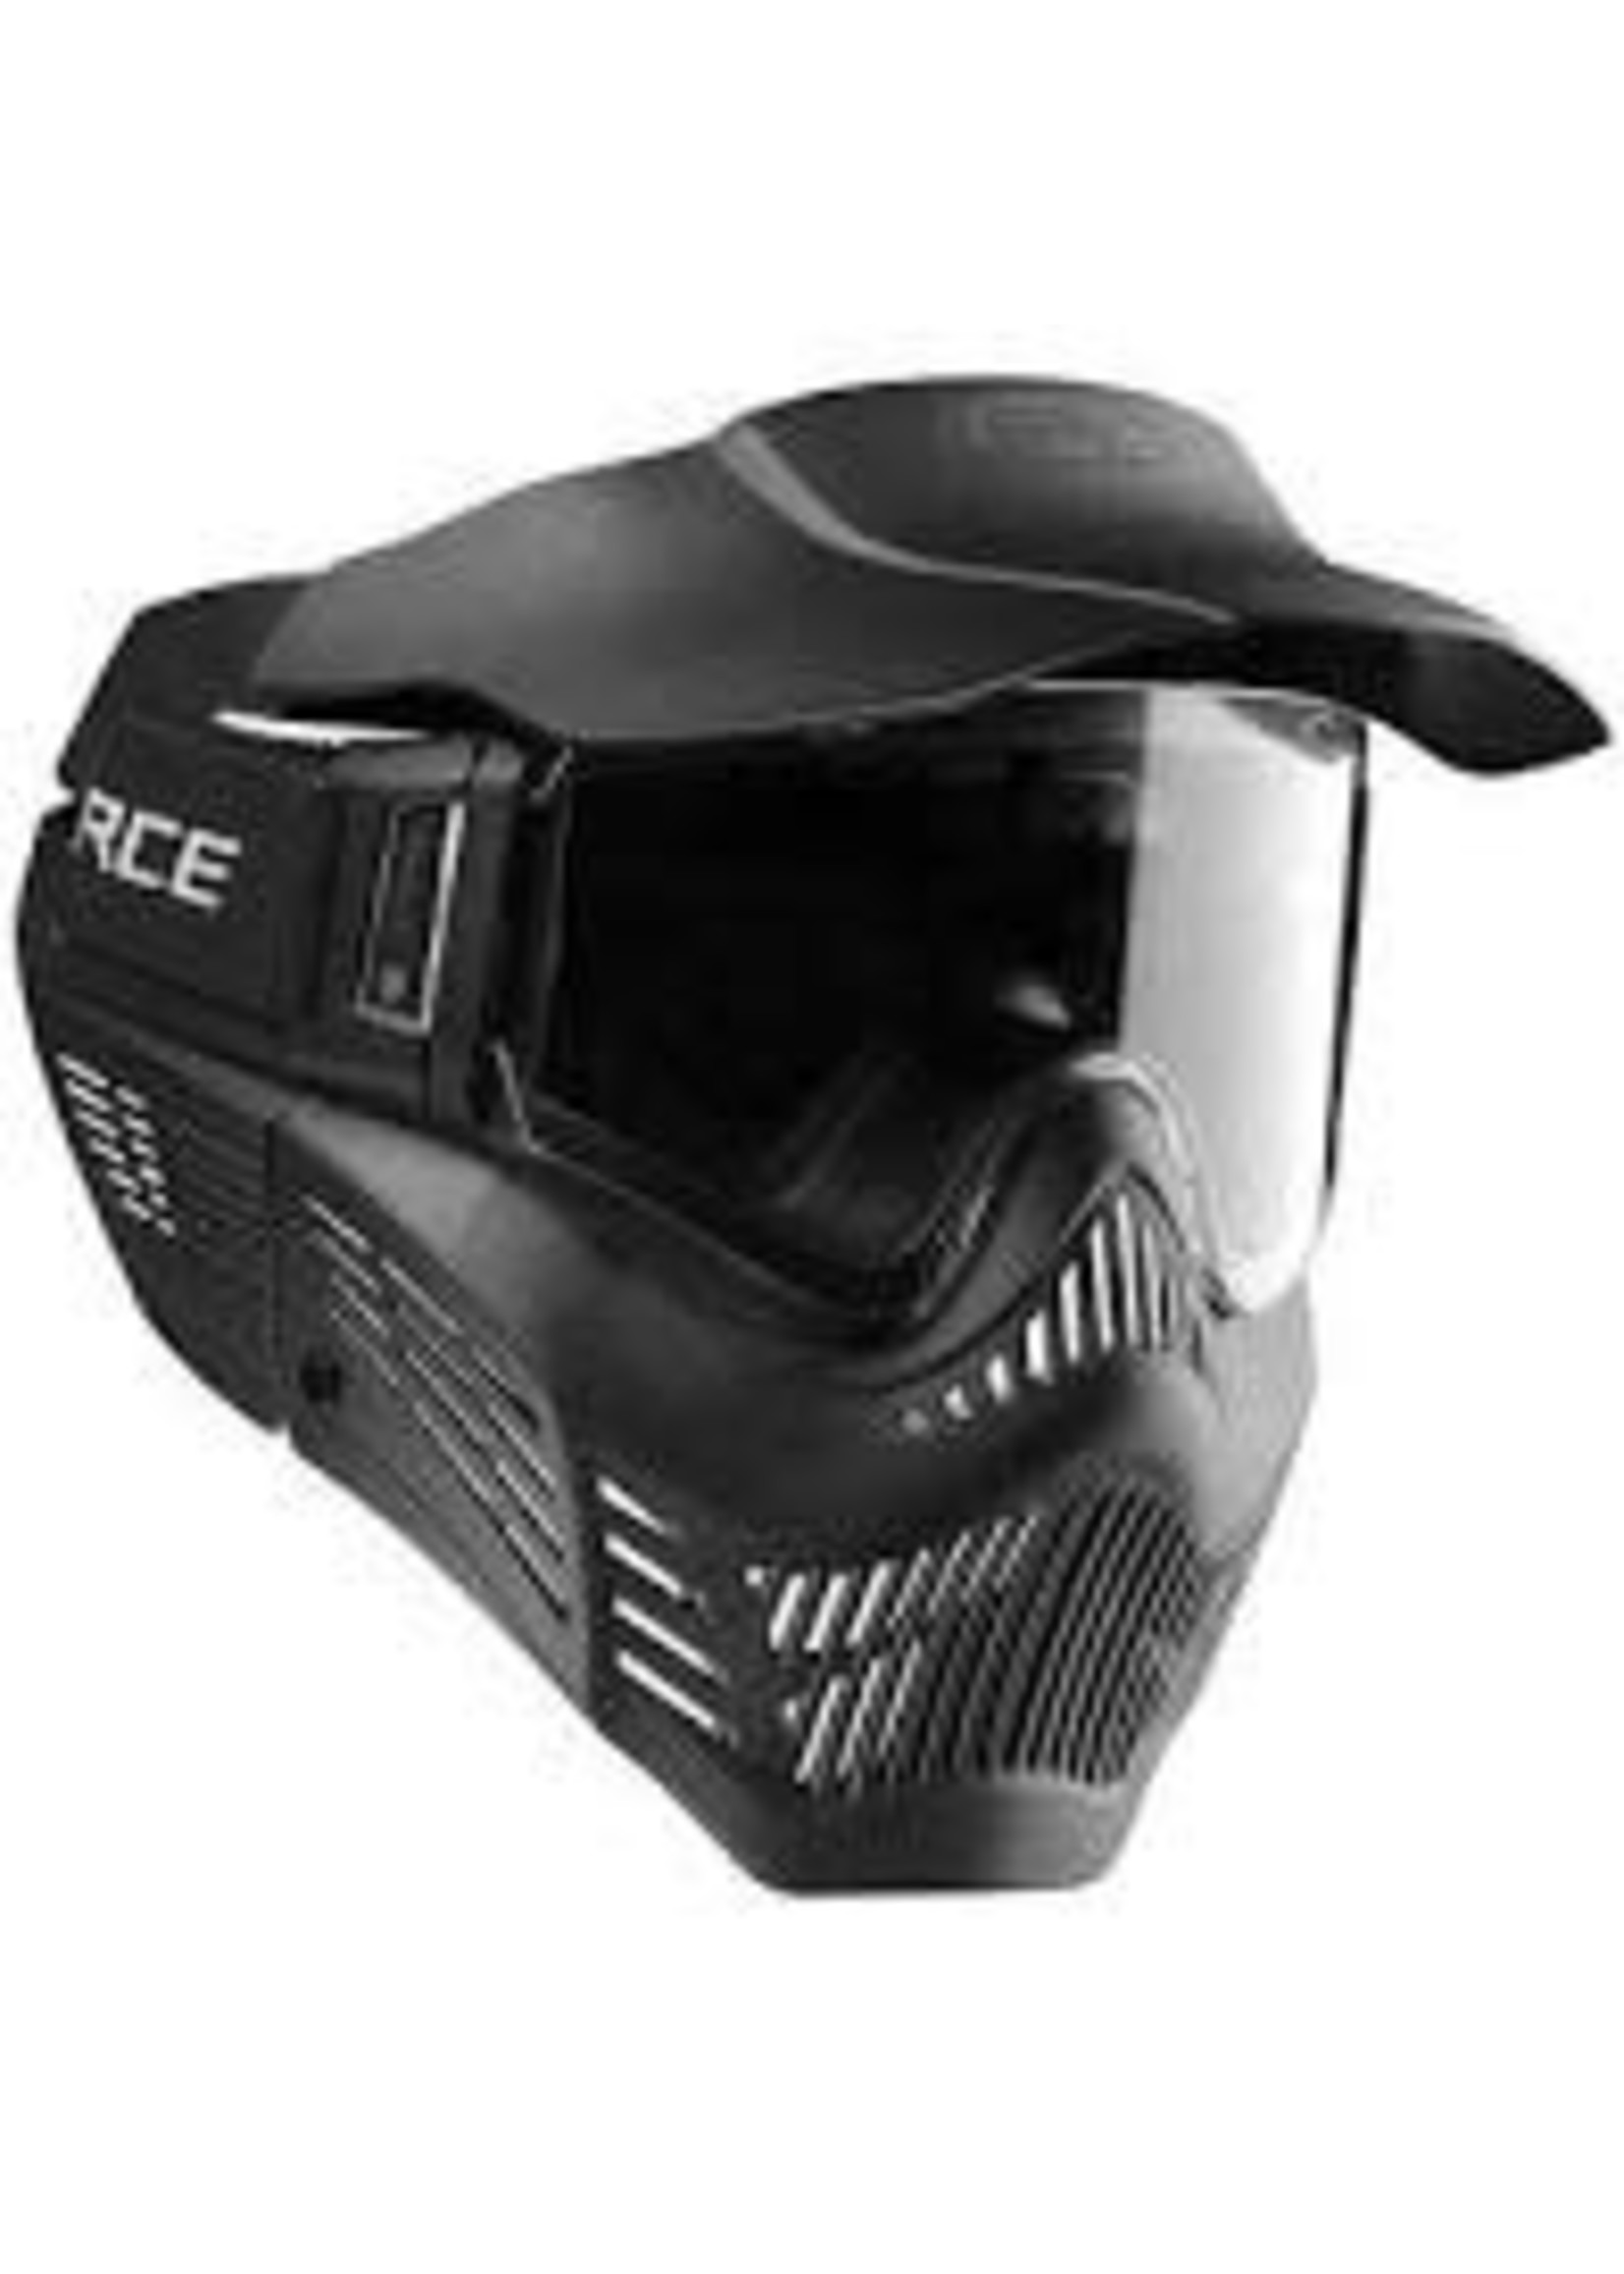 VFORCE VForce Armor Mask Gen 3 - Black - Single Clear